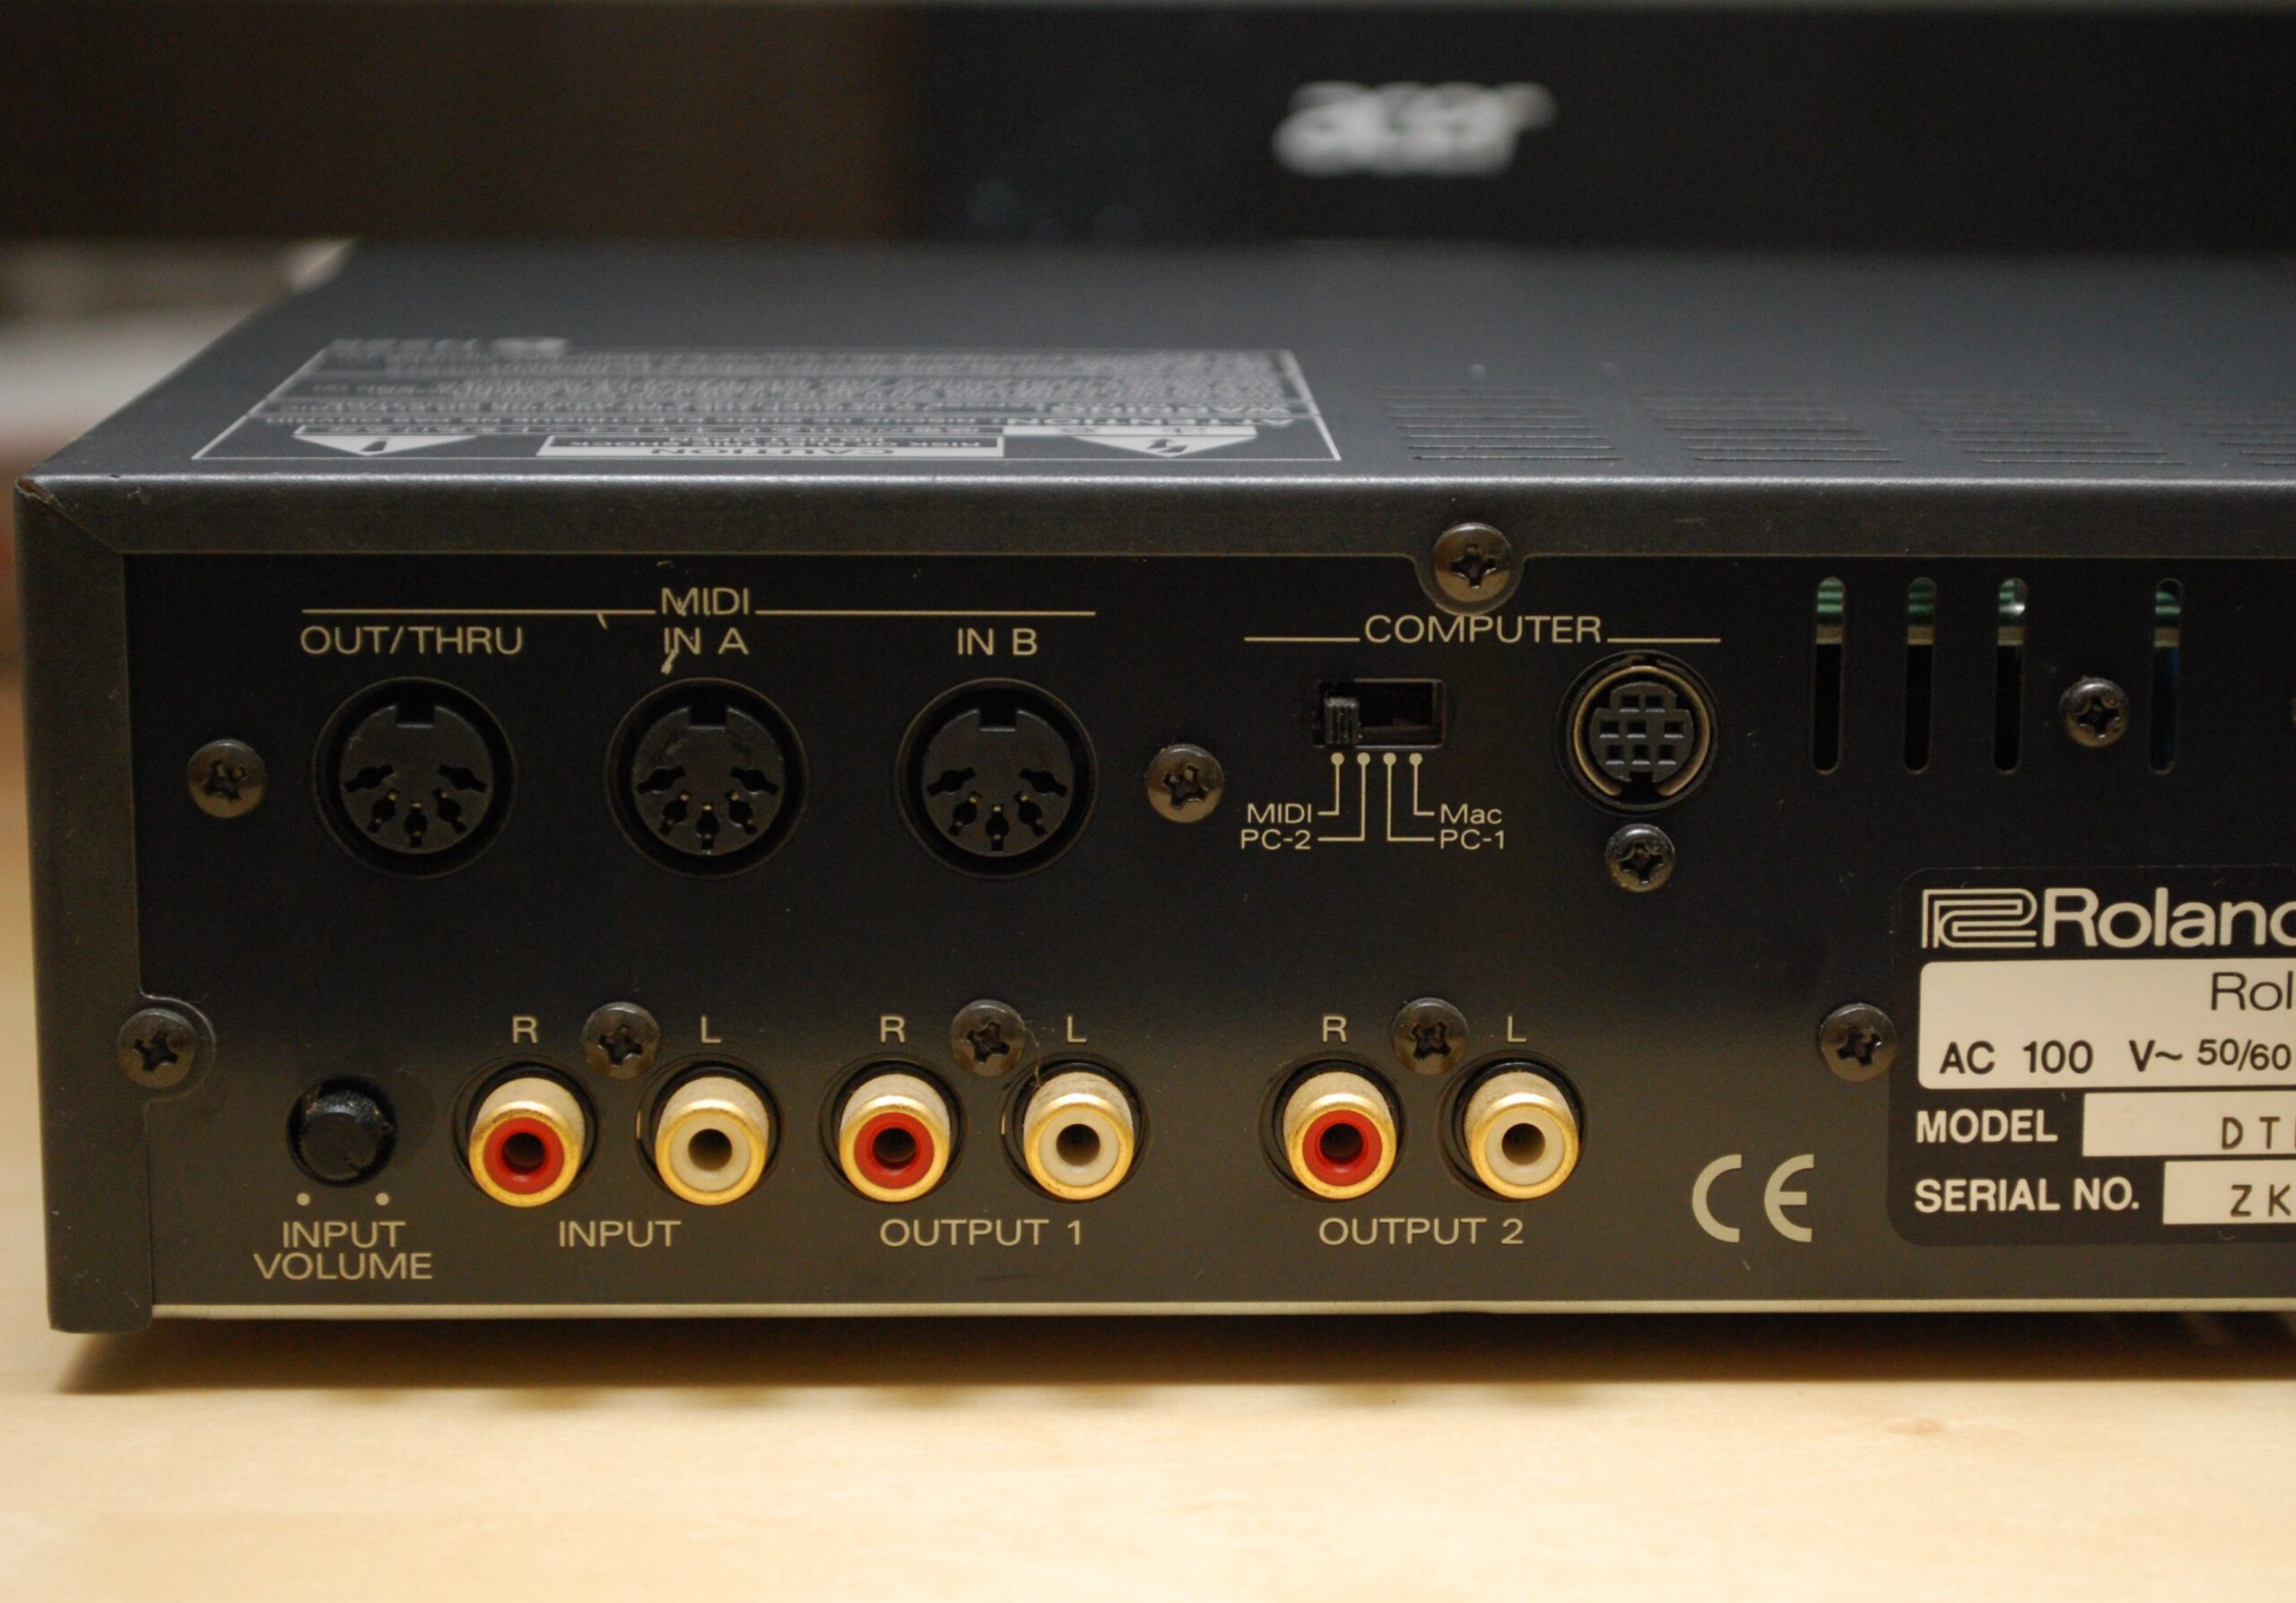 1996年、Roland GS音源の最高峰として登場したSC-88Pro | DTMステーション